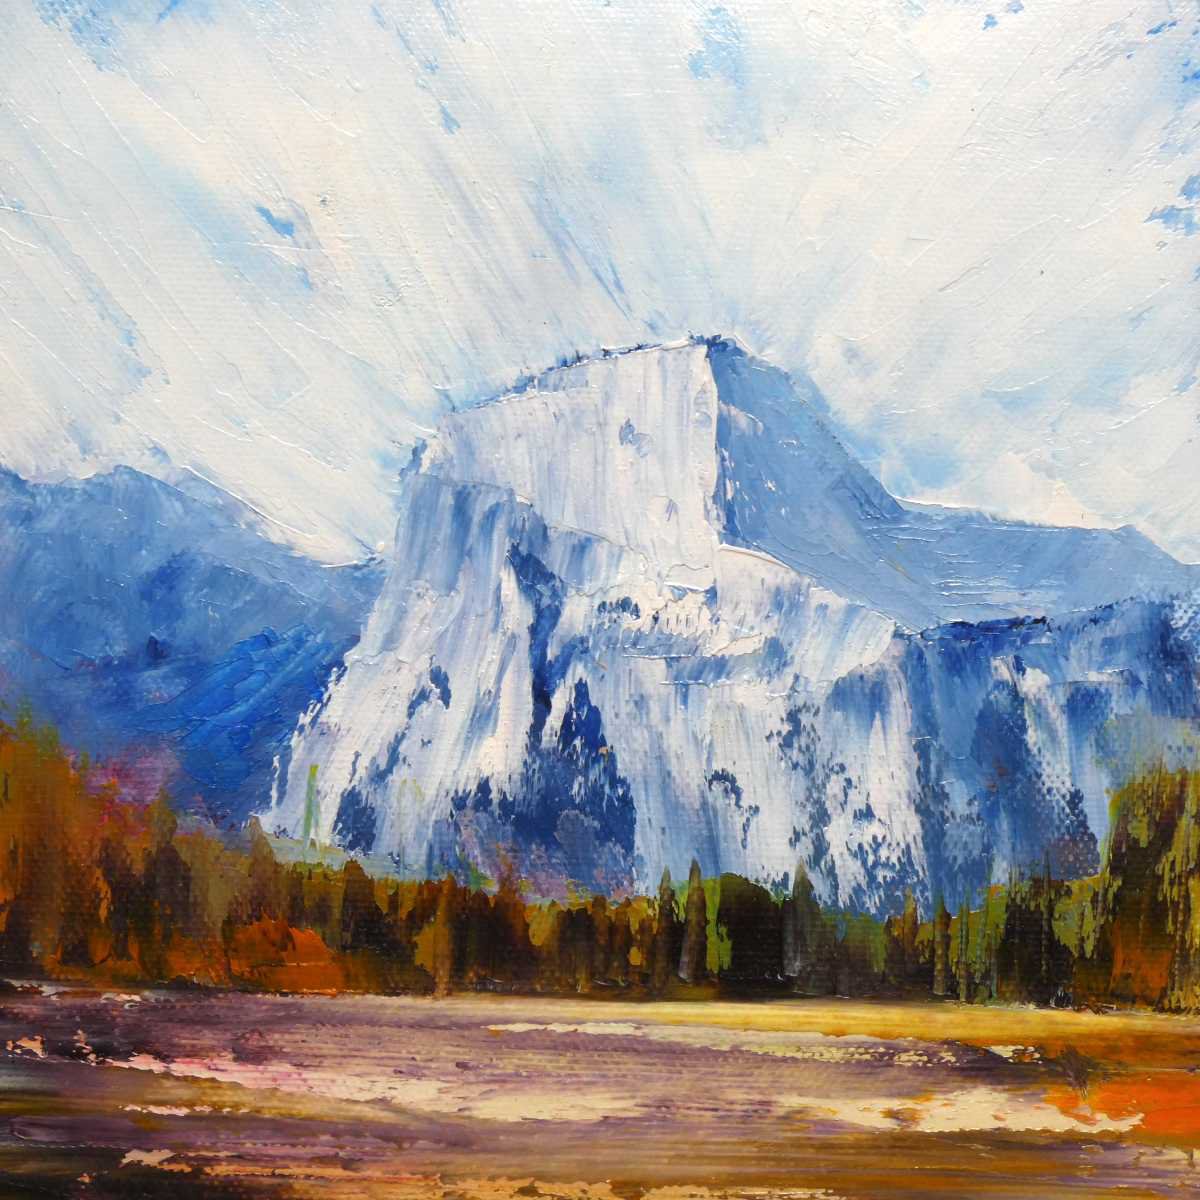 El Capitan, Yosemite by oconnart